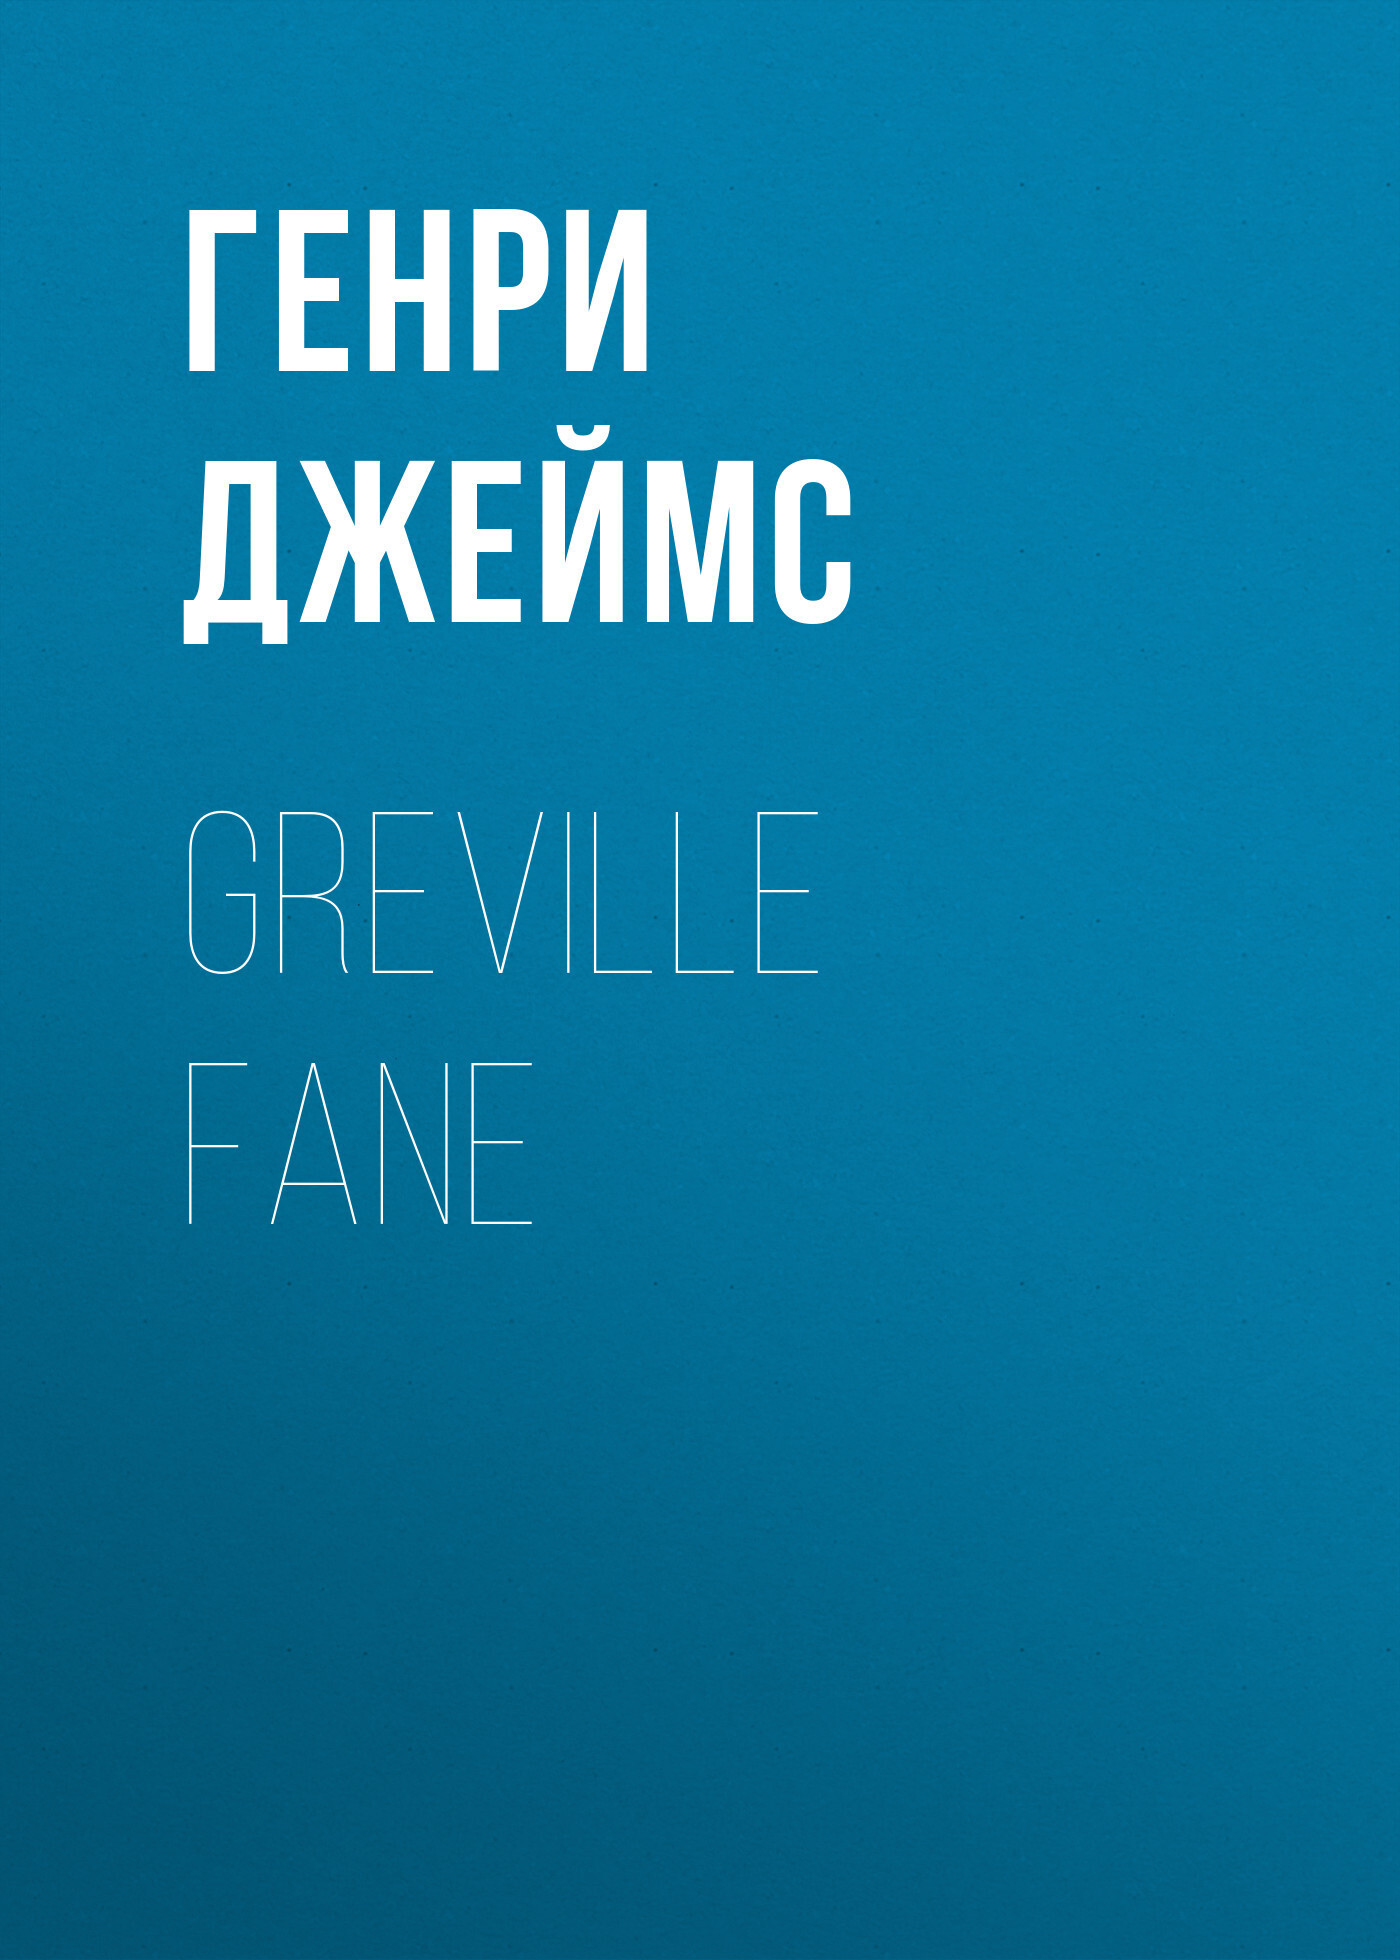 Книга Greville Fane из серии , созданная Генри Джеймс, может относится к жанру Зарубежная классика, Зарубежная старинная литература. Стоимость электронной книги Greville Fane с идентификатором 34843750 составляет 0 руб.